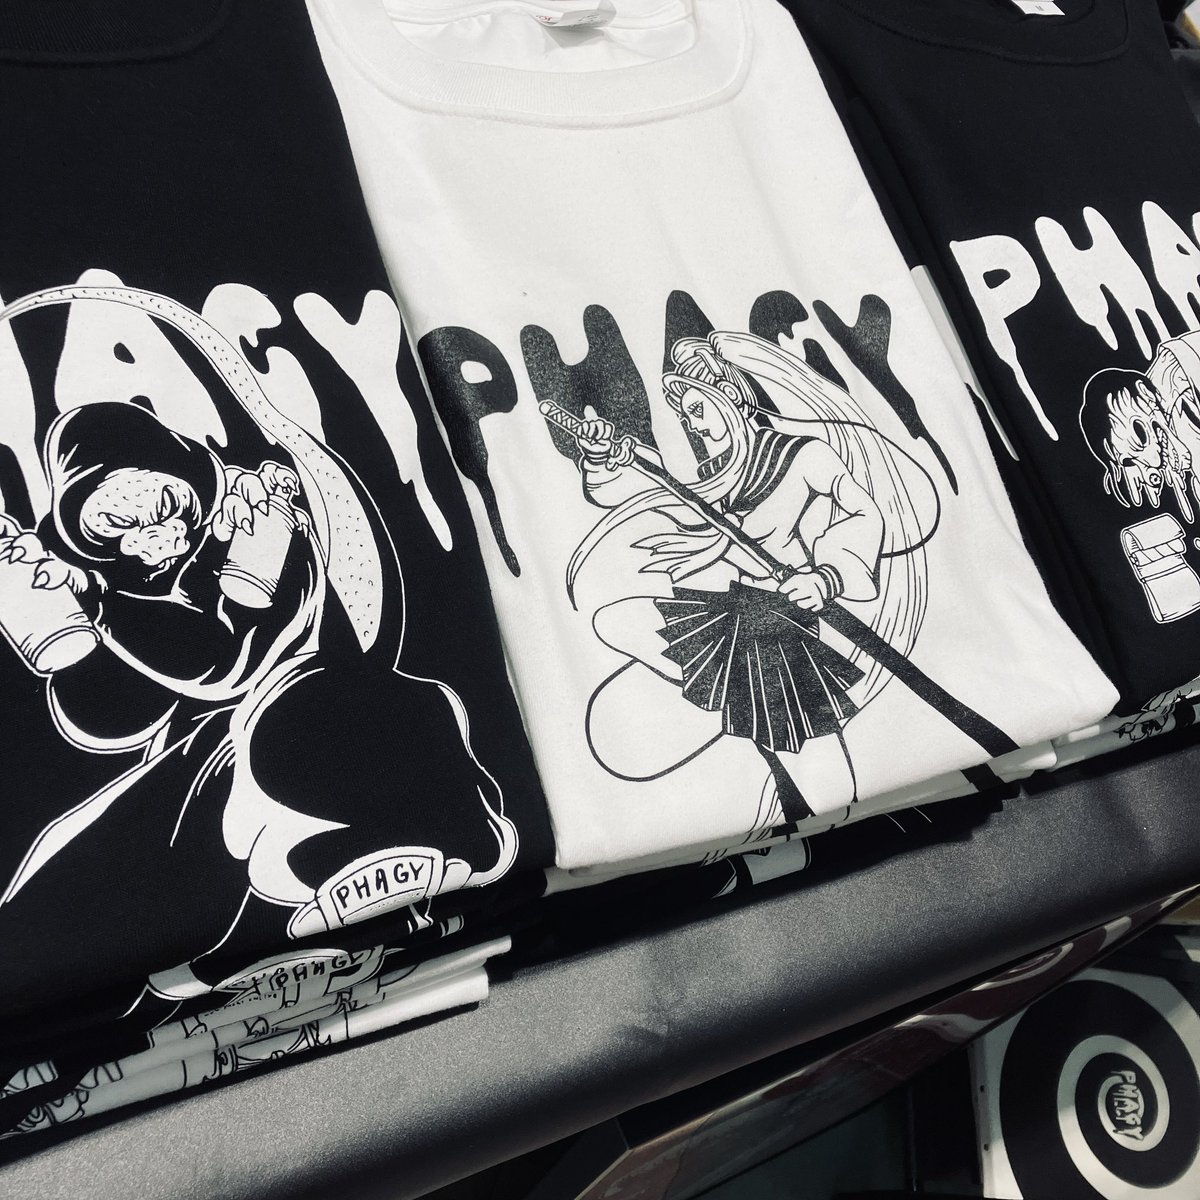 RP【PHAGY NEW GOODS】🔥
2024.04.23tue 21:00〜

阪神百貨店POP UP「KID & HOOD」
とNコレ大阪にて販売していた
PHAGYの新しいTシャツとフィギュアを
オンラインストアにアップします！🏋️

なんとトカゲのブラックのTシャツは
完売と大人気でした🦎
数が少なくなっておりますが是非